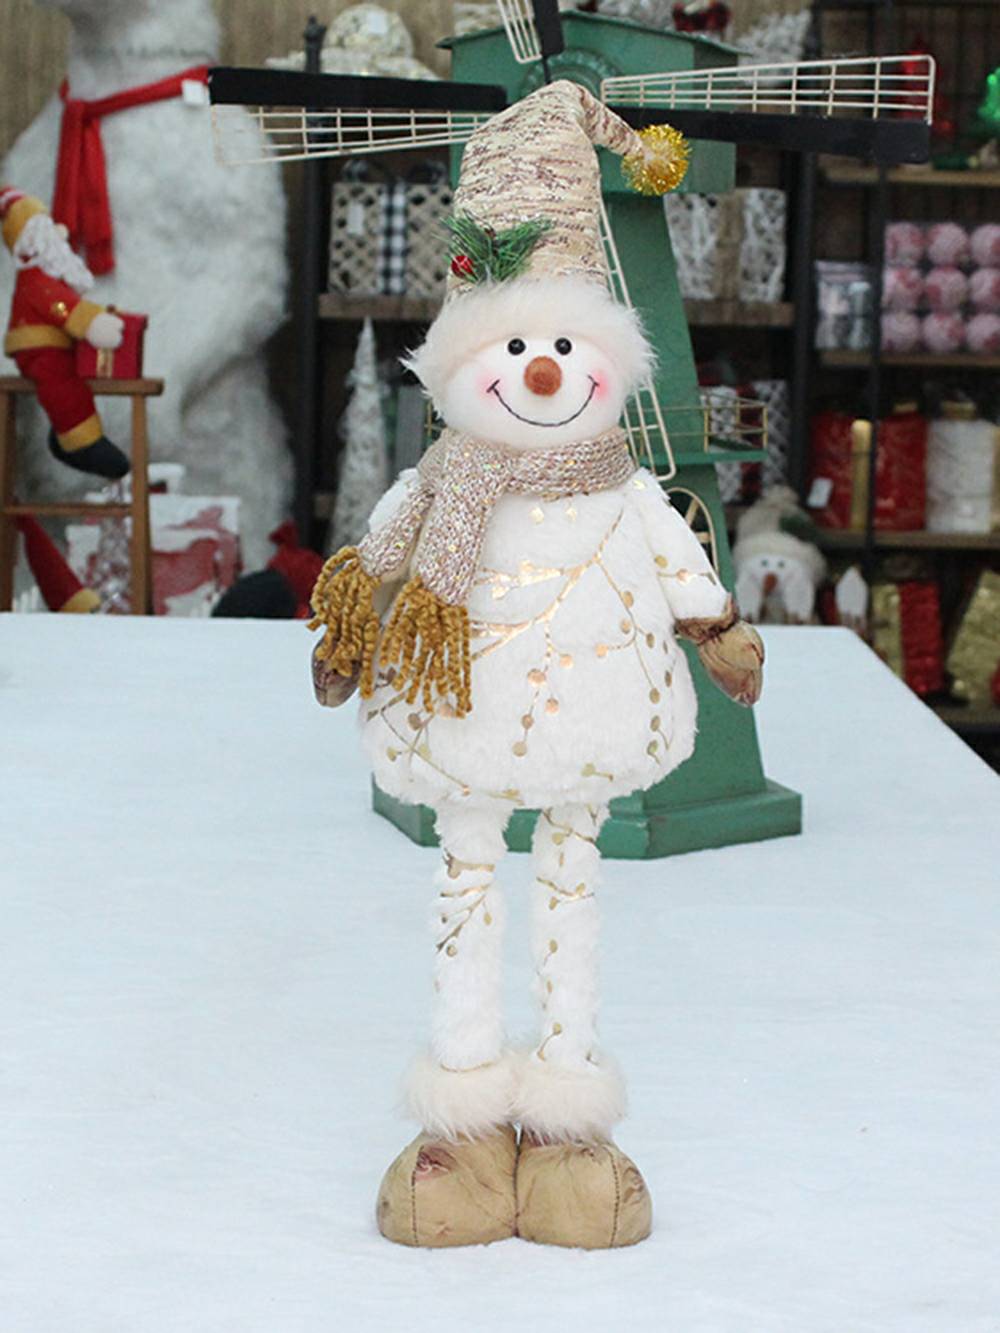 Ornamento de boneca de boneco de neve retrátil em tecido impresso